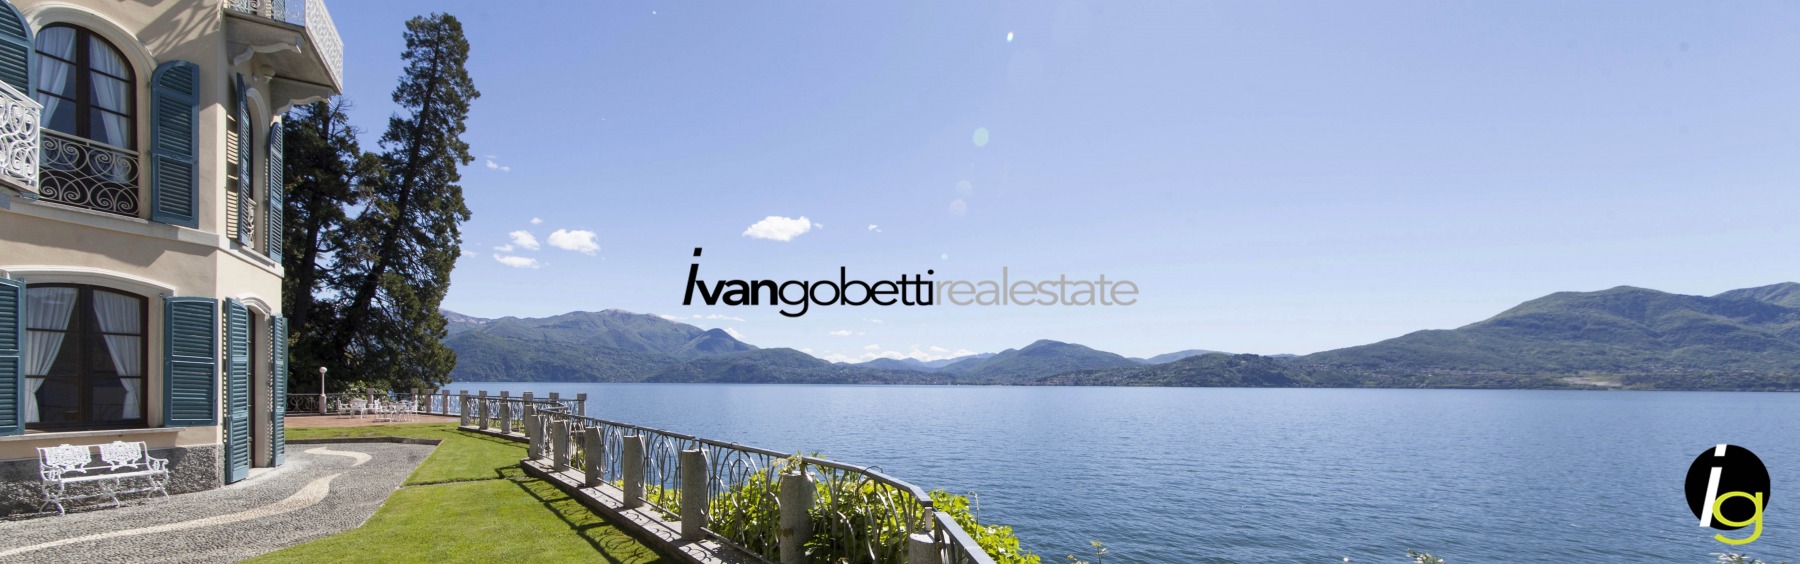 Historische Jugendstil-Villa am Lago Maggiore zu verkaufen<br/><span>Produktcode: 1939